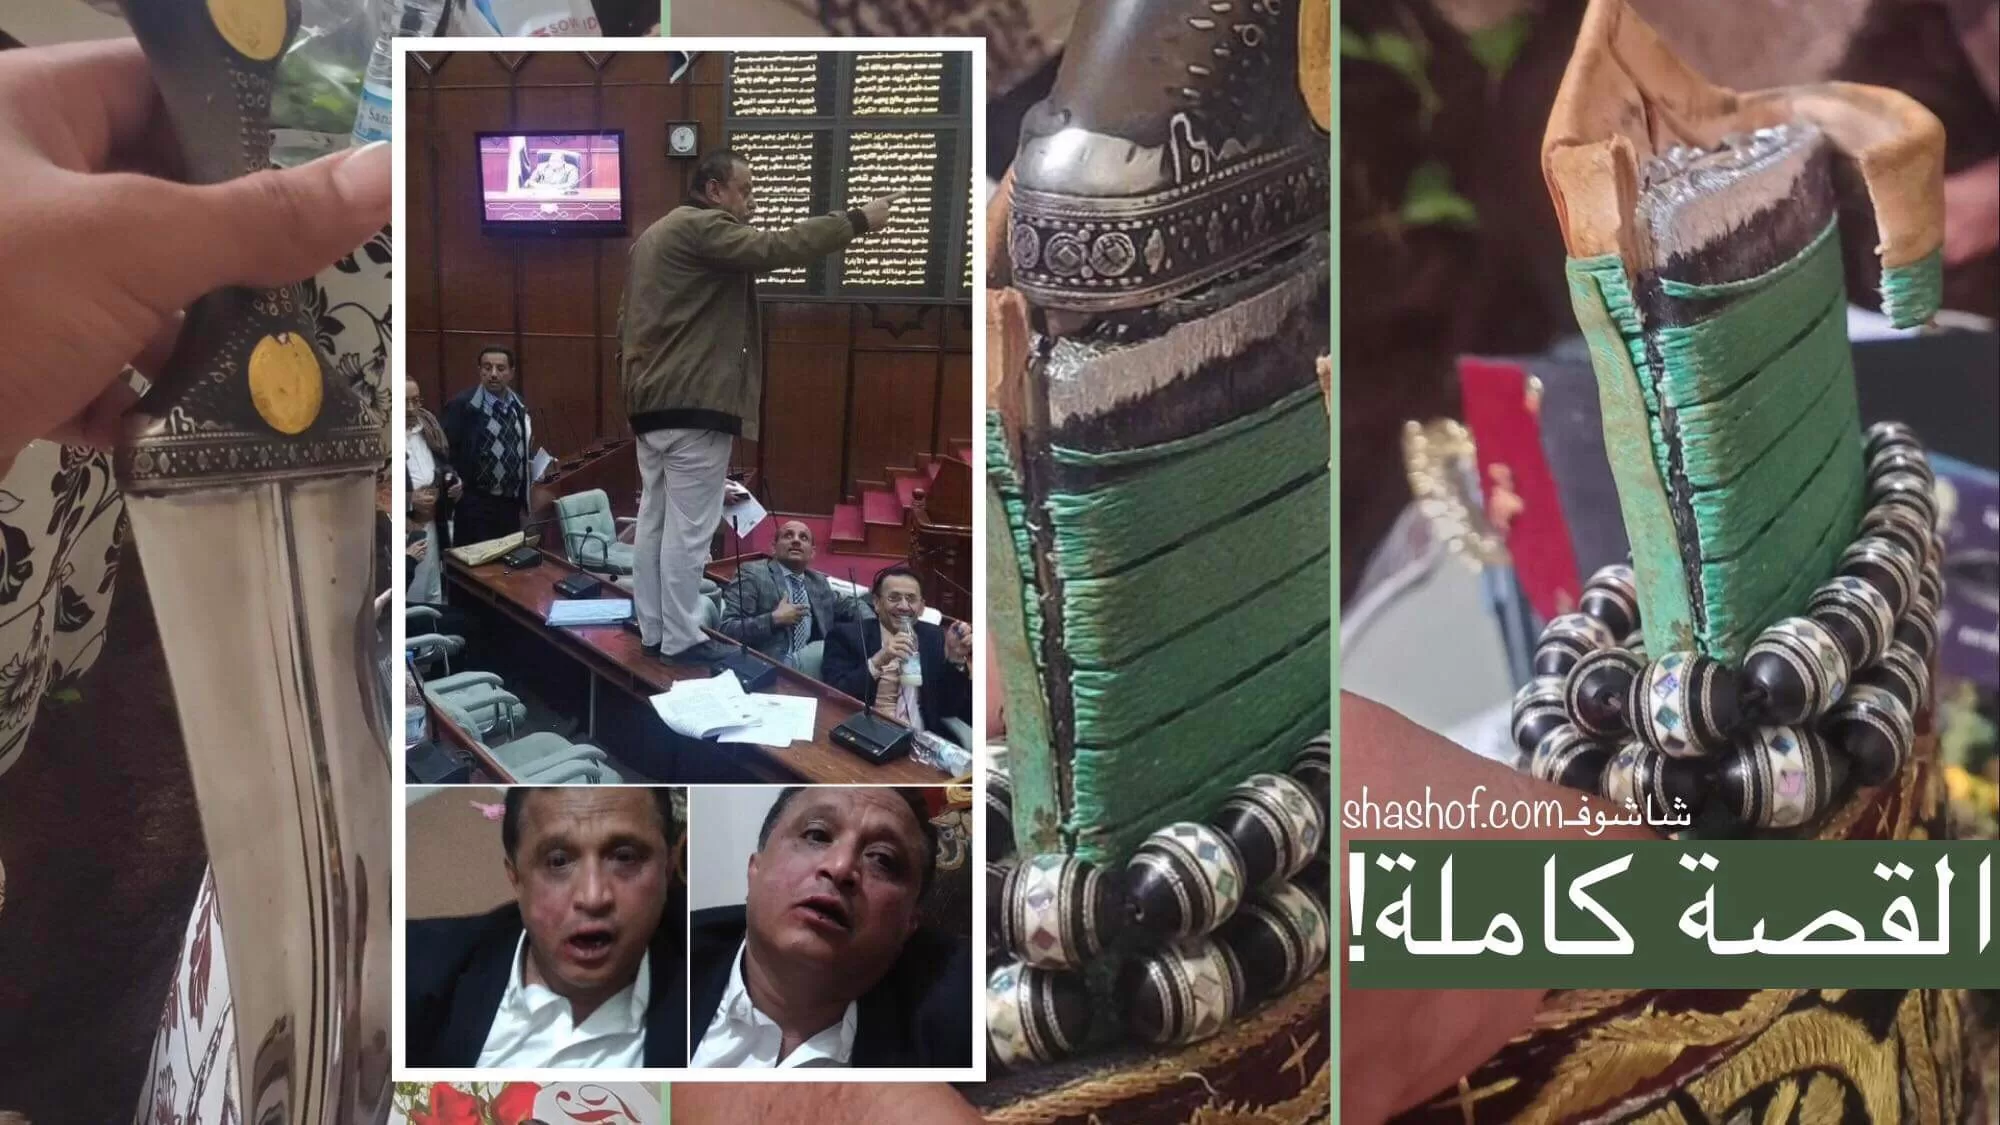 احمد سيف حاشد يروي قصة الصحفي مجلي الصمدي الذي تم الاعتداء عليه في صنعاء